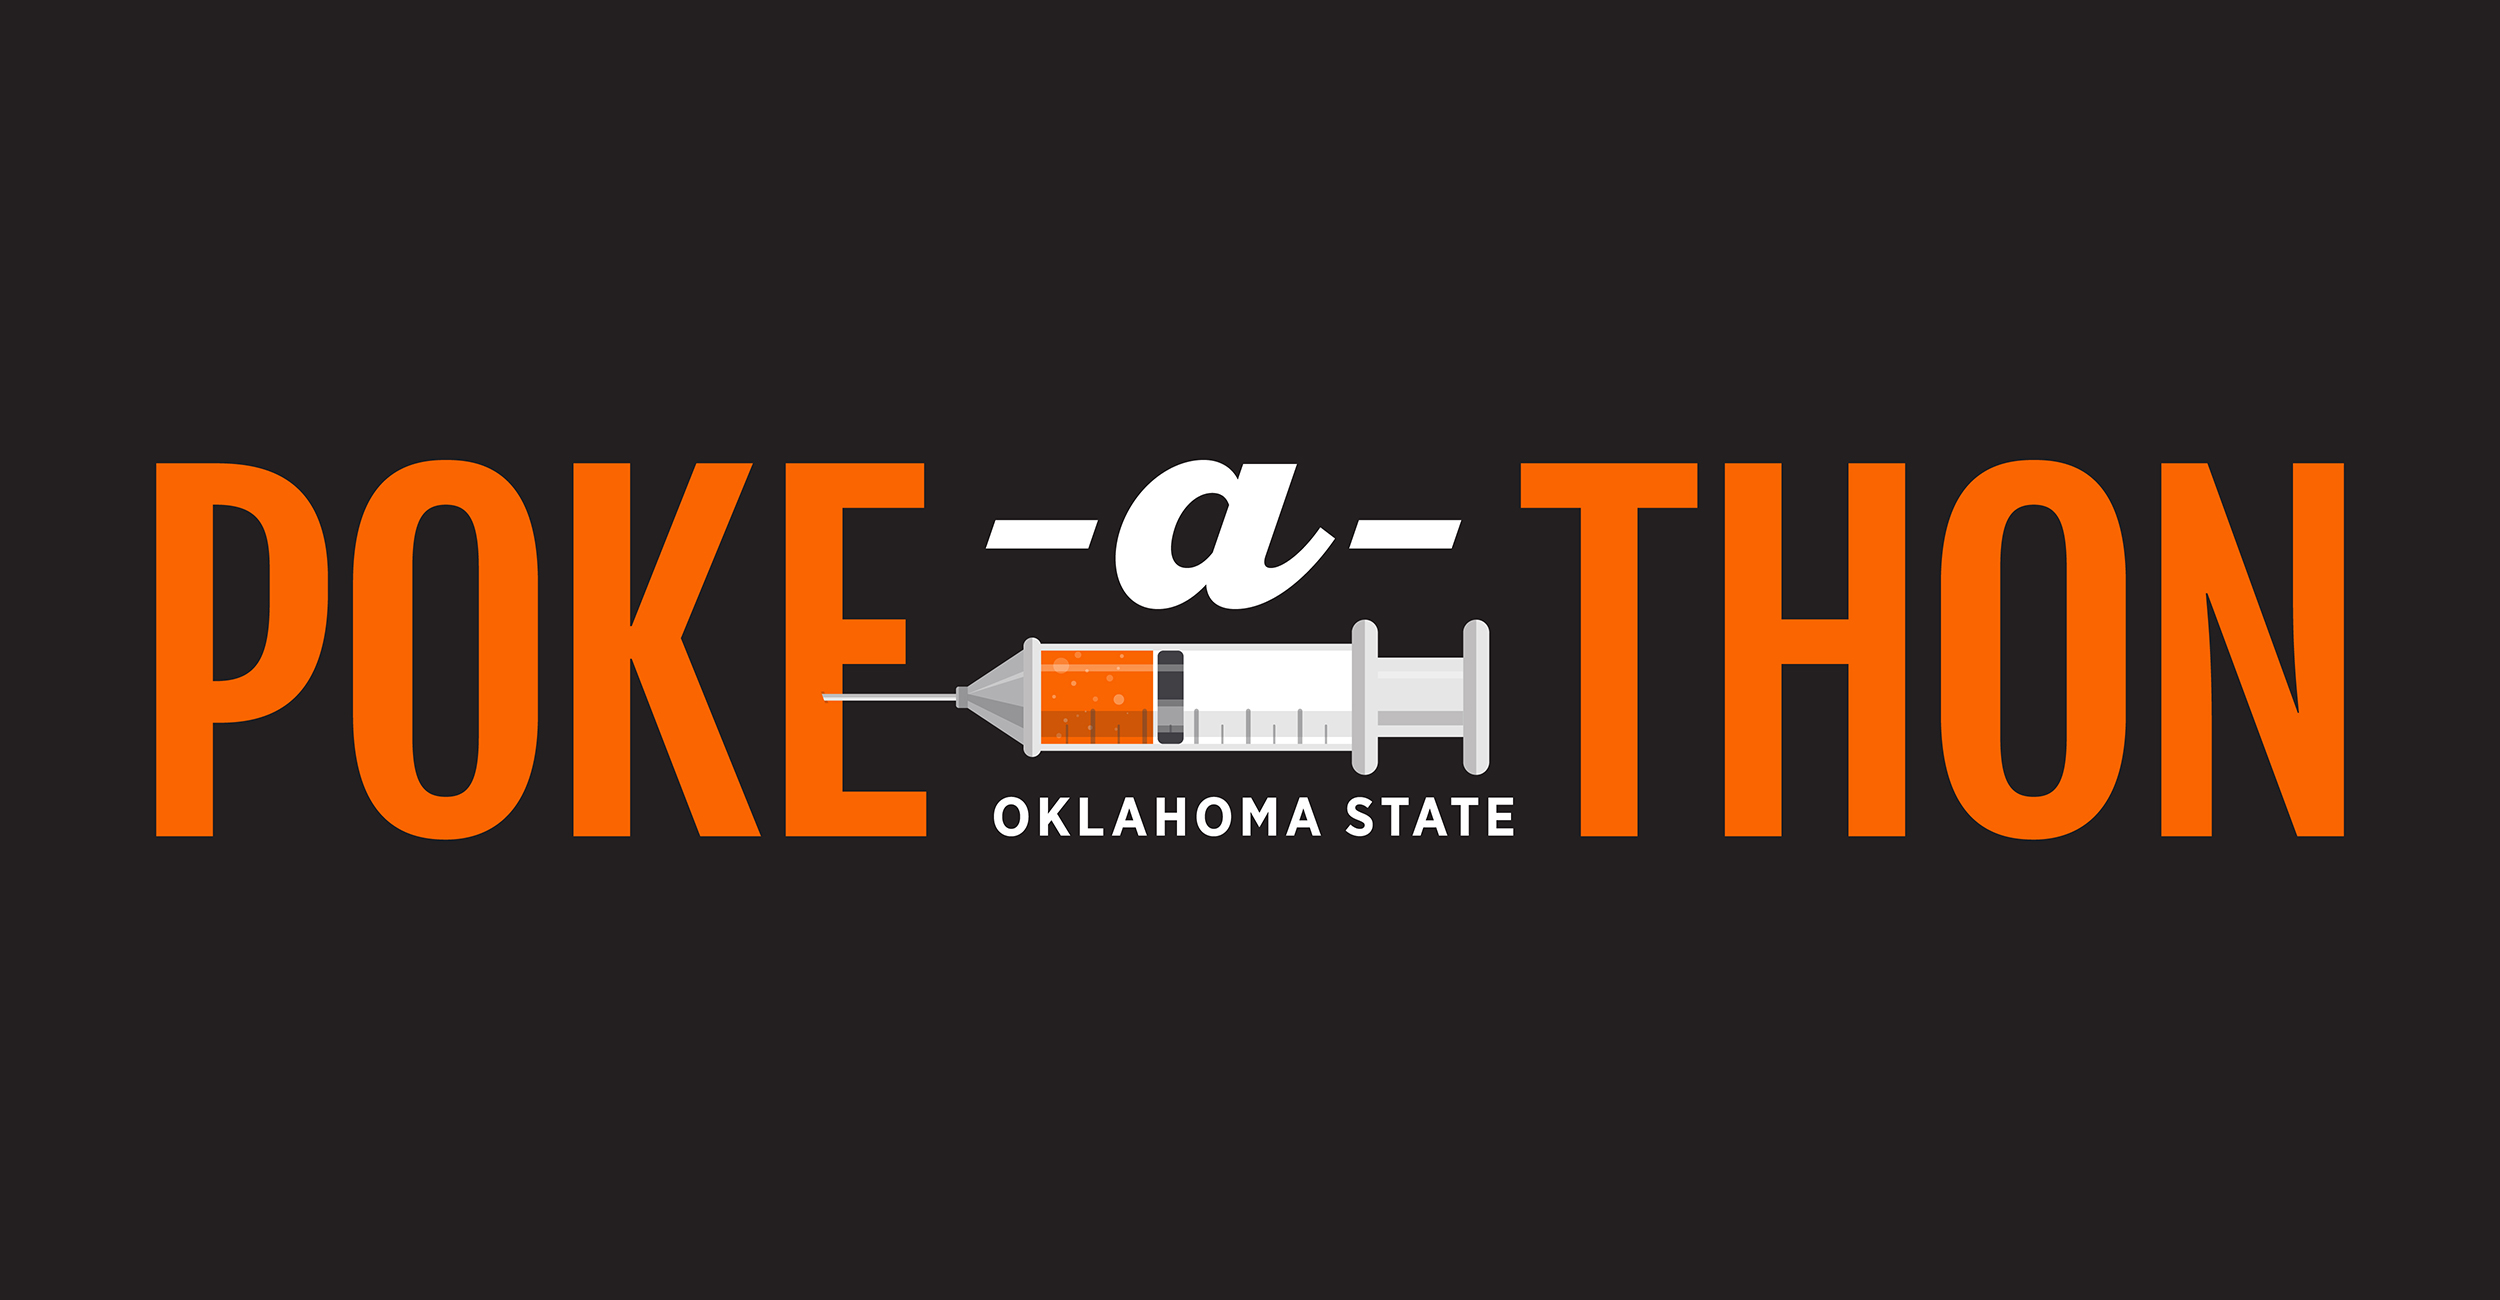 Poke-a-thon campaign logo